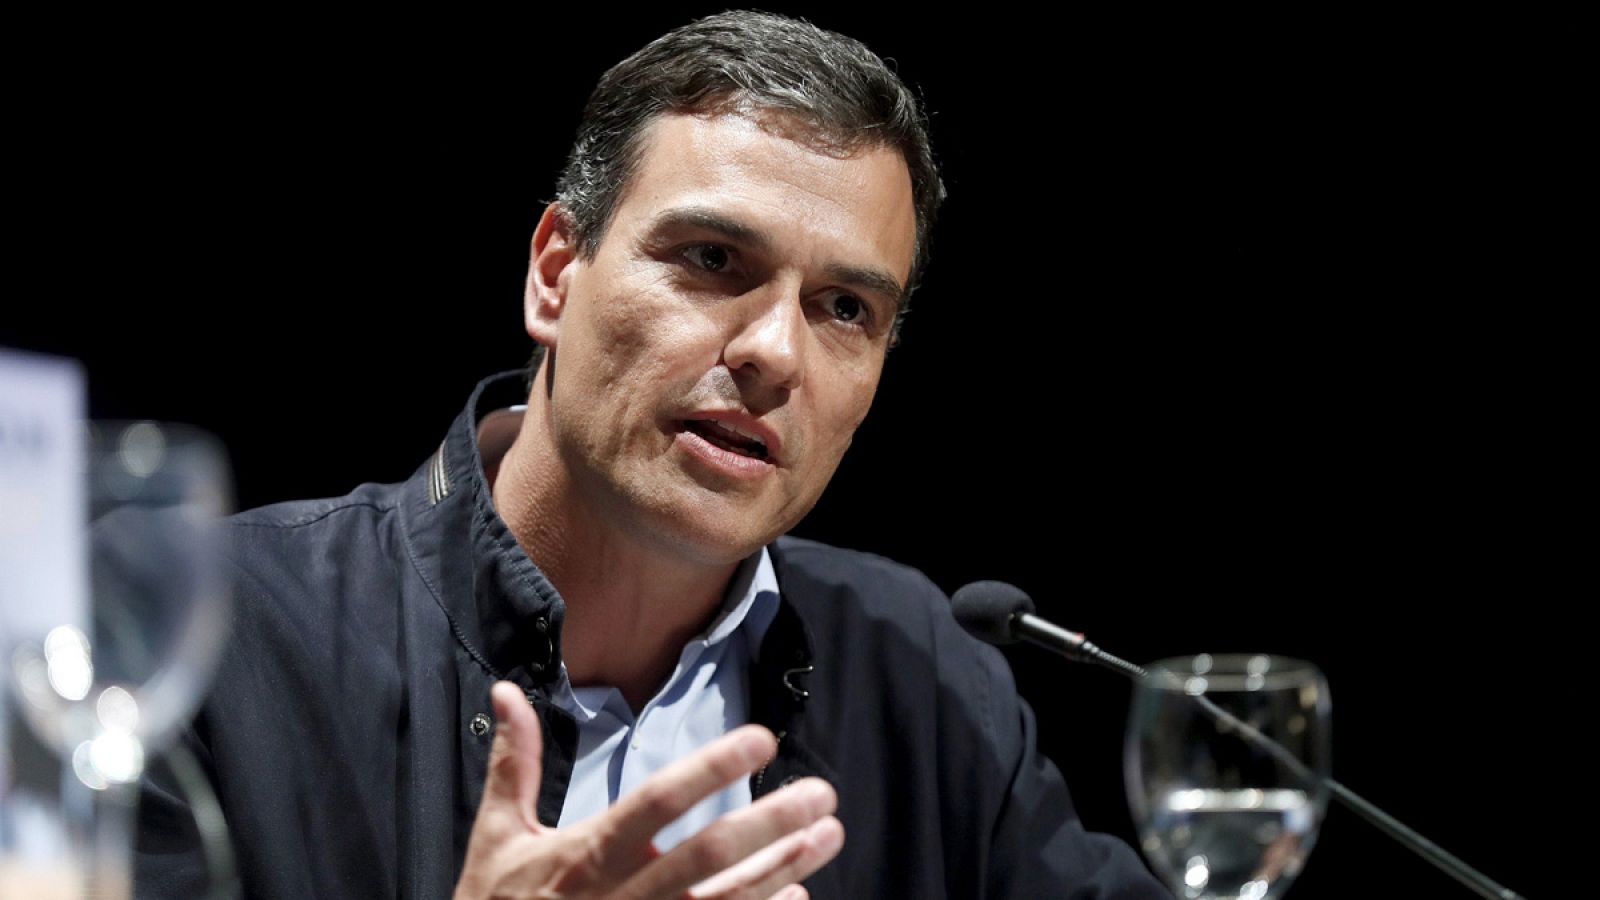 El exsecretario general del PSOE y candidato a las primarias del partido, Pedro Sánchez